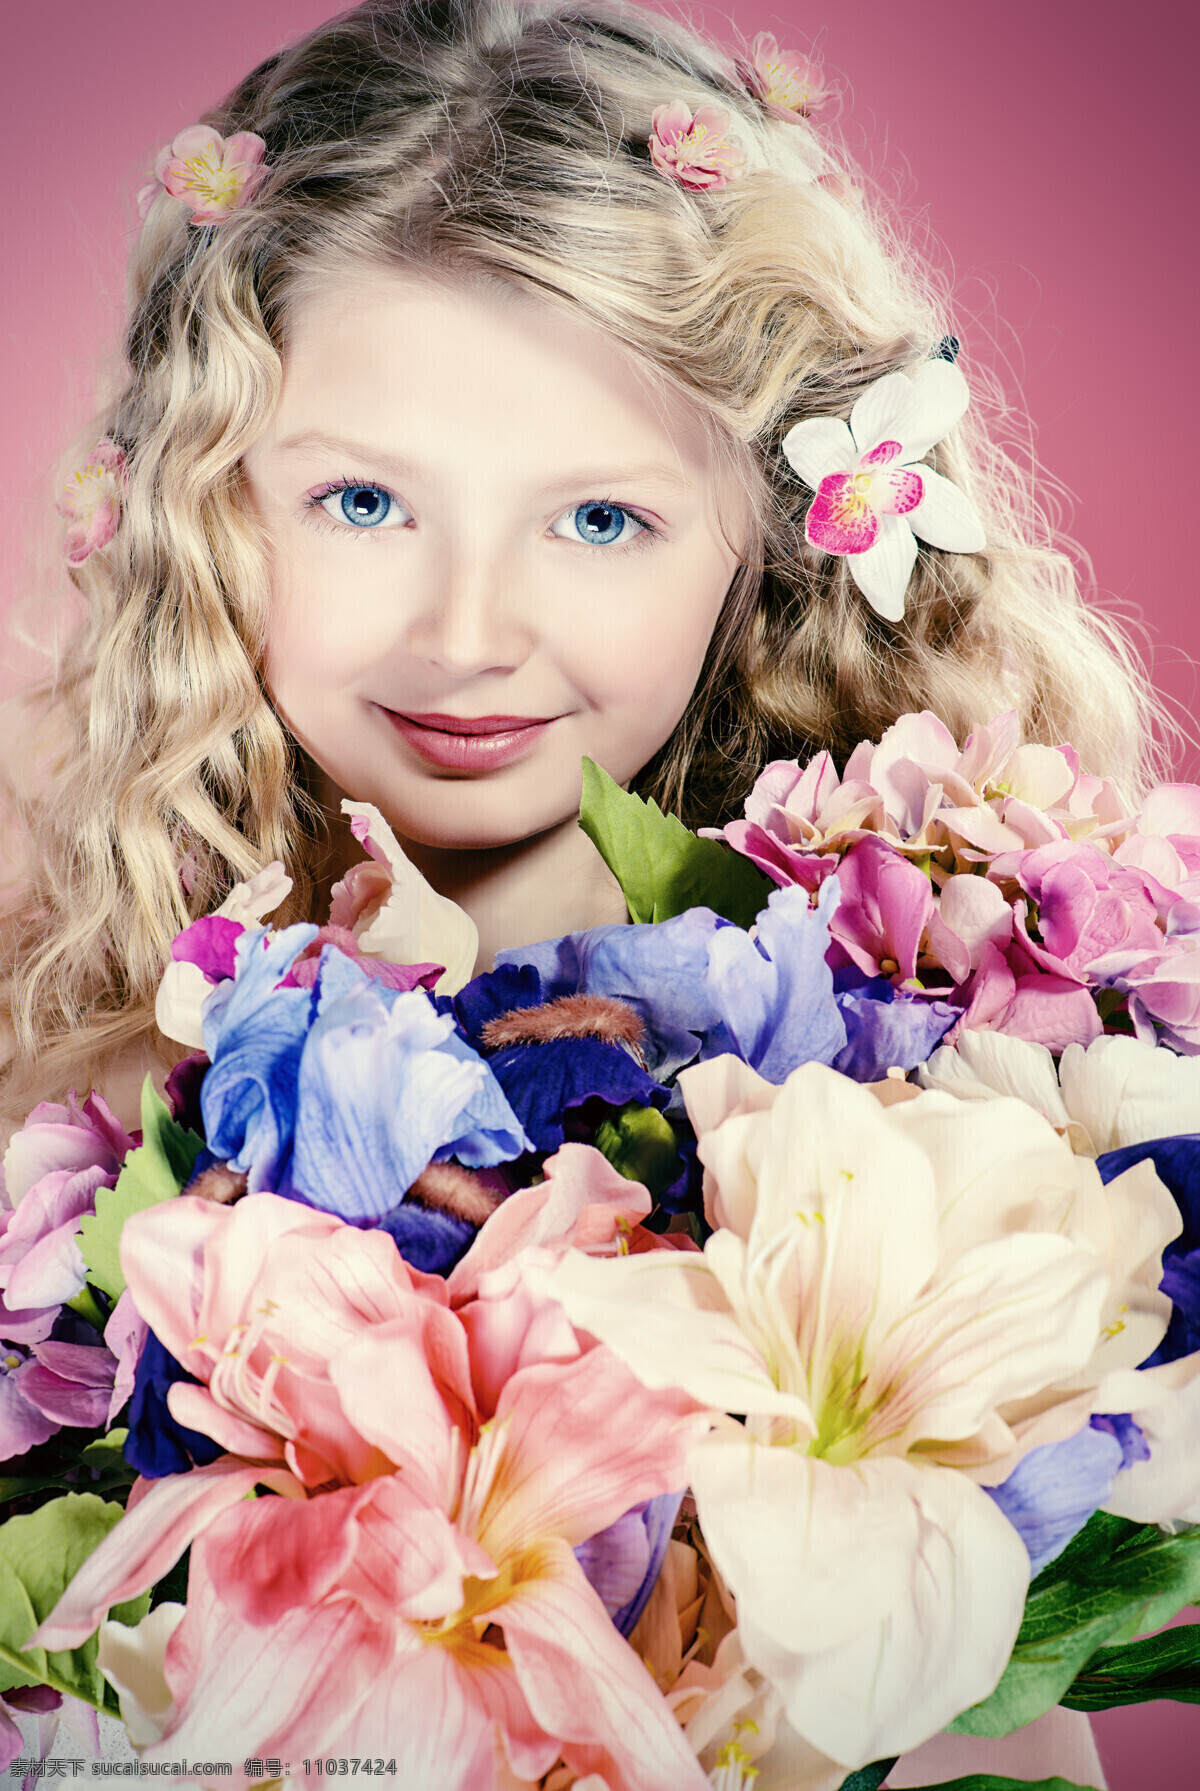 抱 鲜花 可爱 小女孩 幼儿 小孩 外国小孩 人物 儿童图片 人物图片